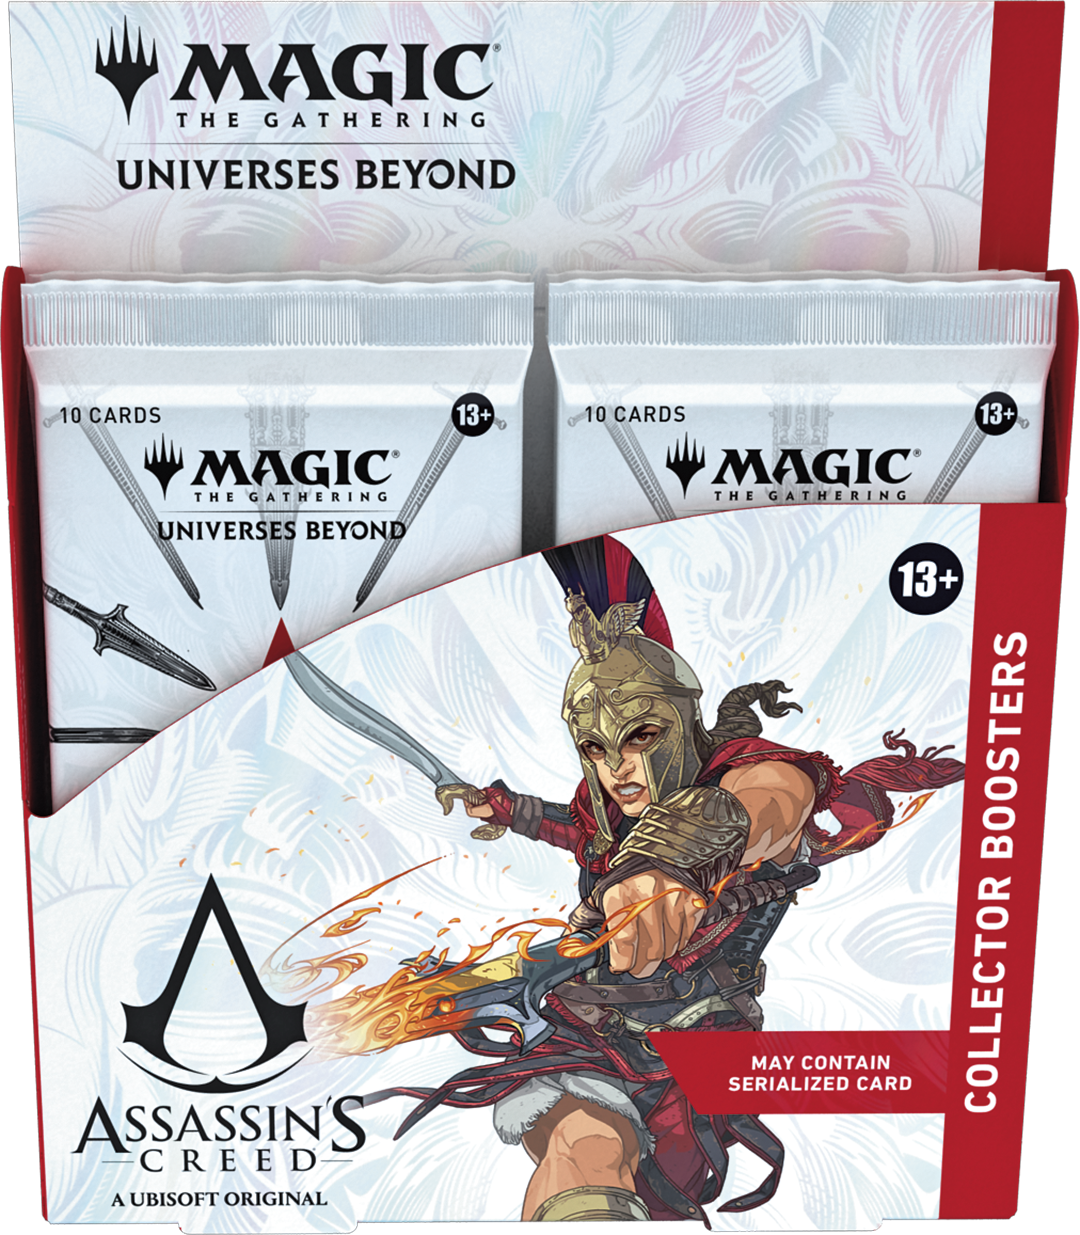 Caja de sobres de coleccionista de Magic: The Gathering — Assassin's Creed®